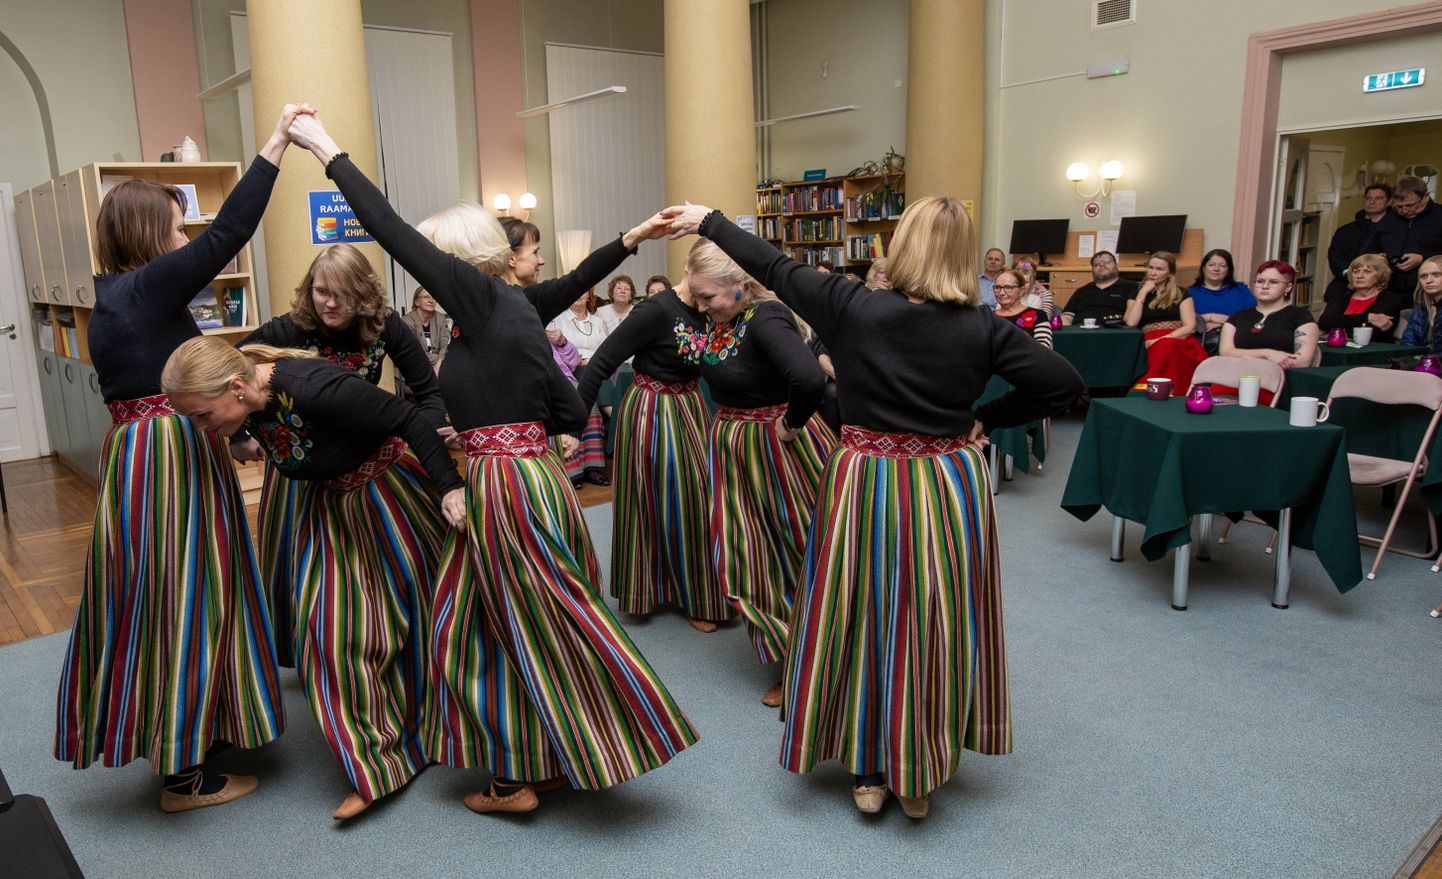 Otse loomulikult ei puudunud Helju Tori mälestusõhtult tants. Pildil naisrühm Gevi, kes tähistab tänavu kuuekümne aasta juubelit.